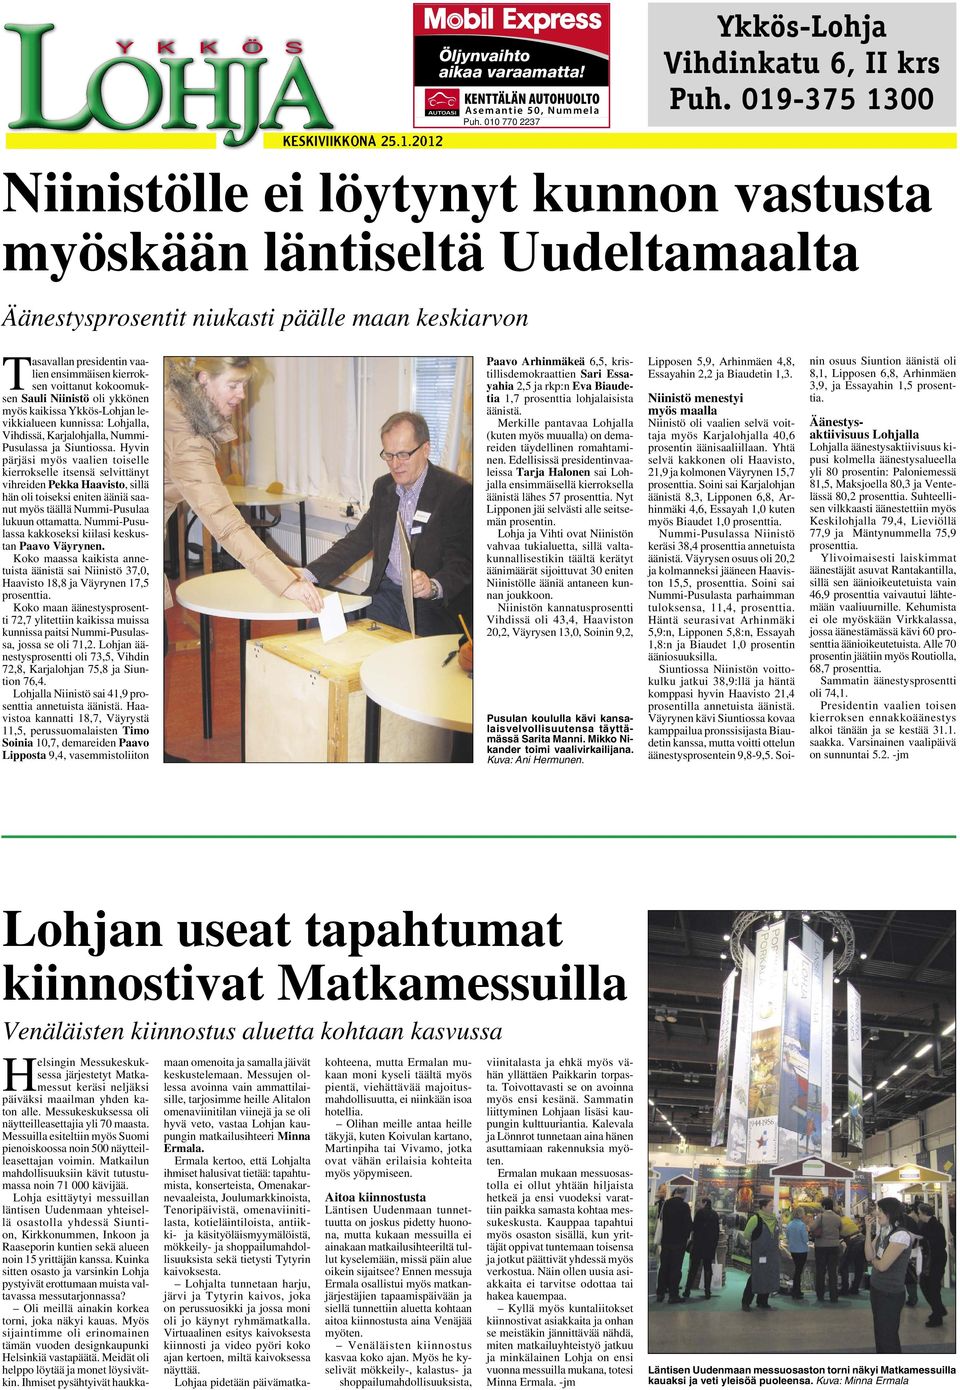 voittanut kokoomuksen Sauli Niinistö oli ykkönen myös kaikissa Ykkös-Lohjan levikkialueen kunnissa: Lohjalla, Vihdissä, Karjalohjalla, Nummi- Pusulassa ja Siuntiossa.